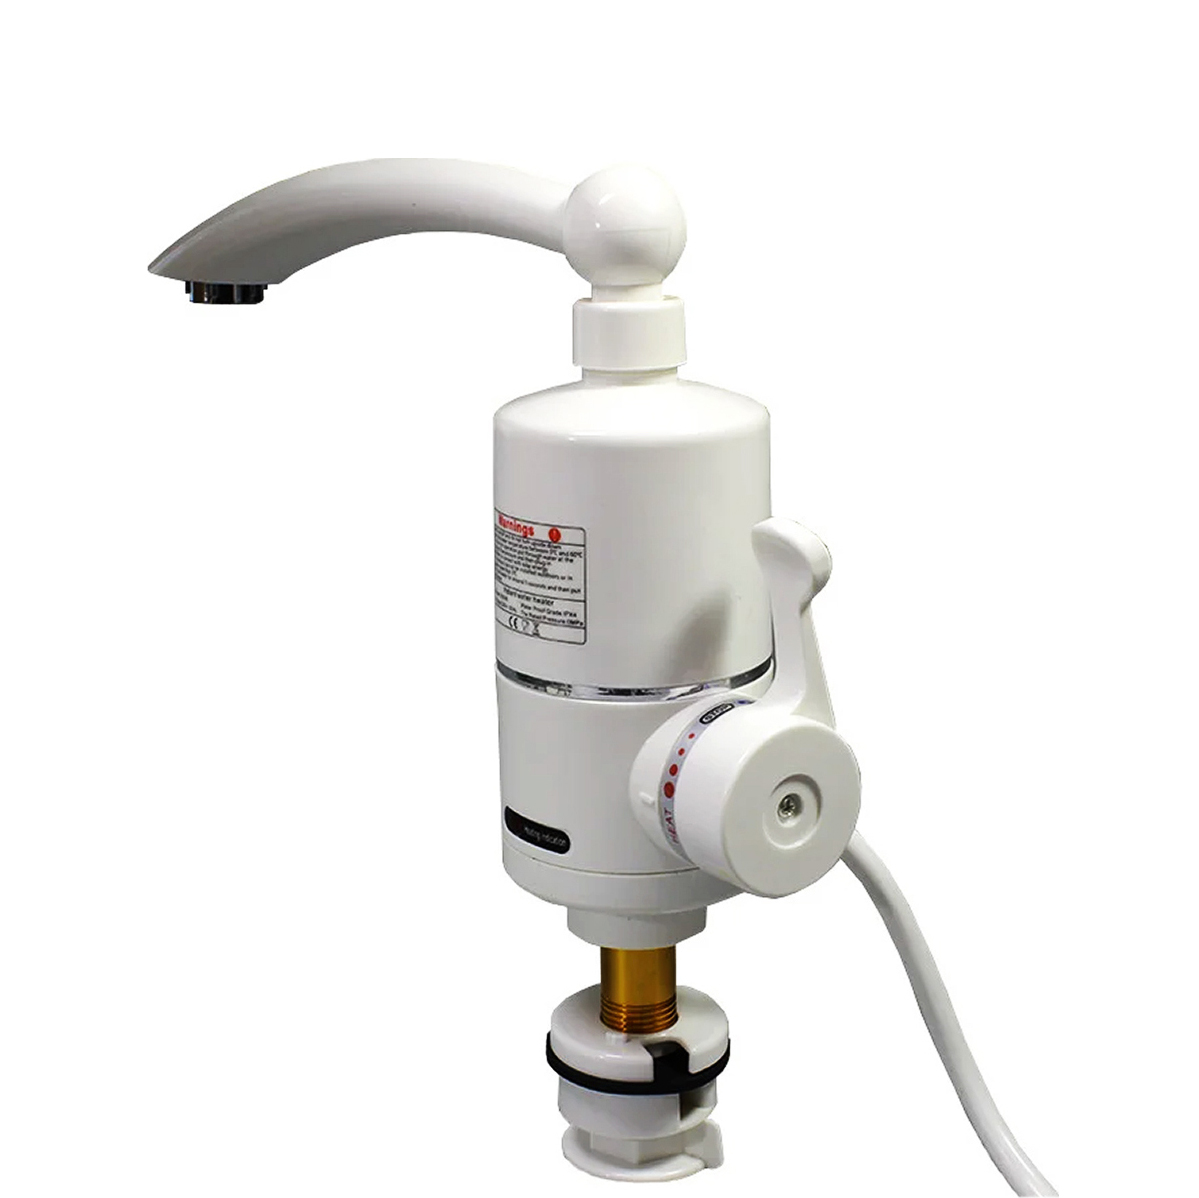 Ηλεκτρικός ταχυθερμαντήρας νερού με βρύση – Ταχυθερμοσίφωνας RX-010